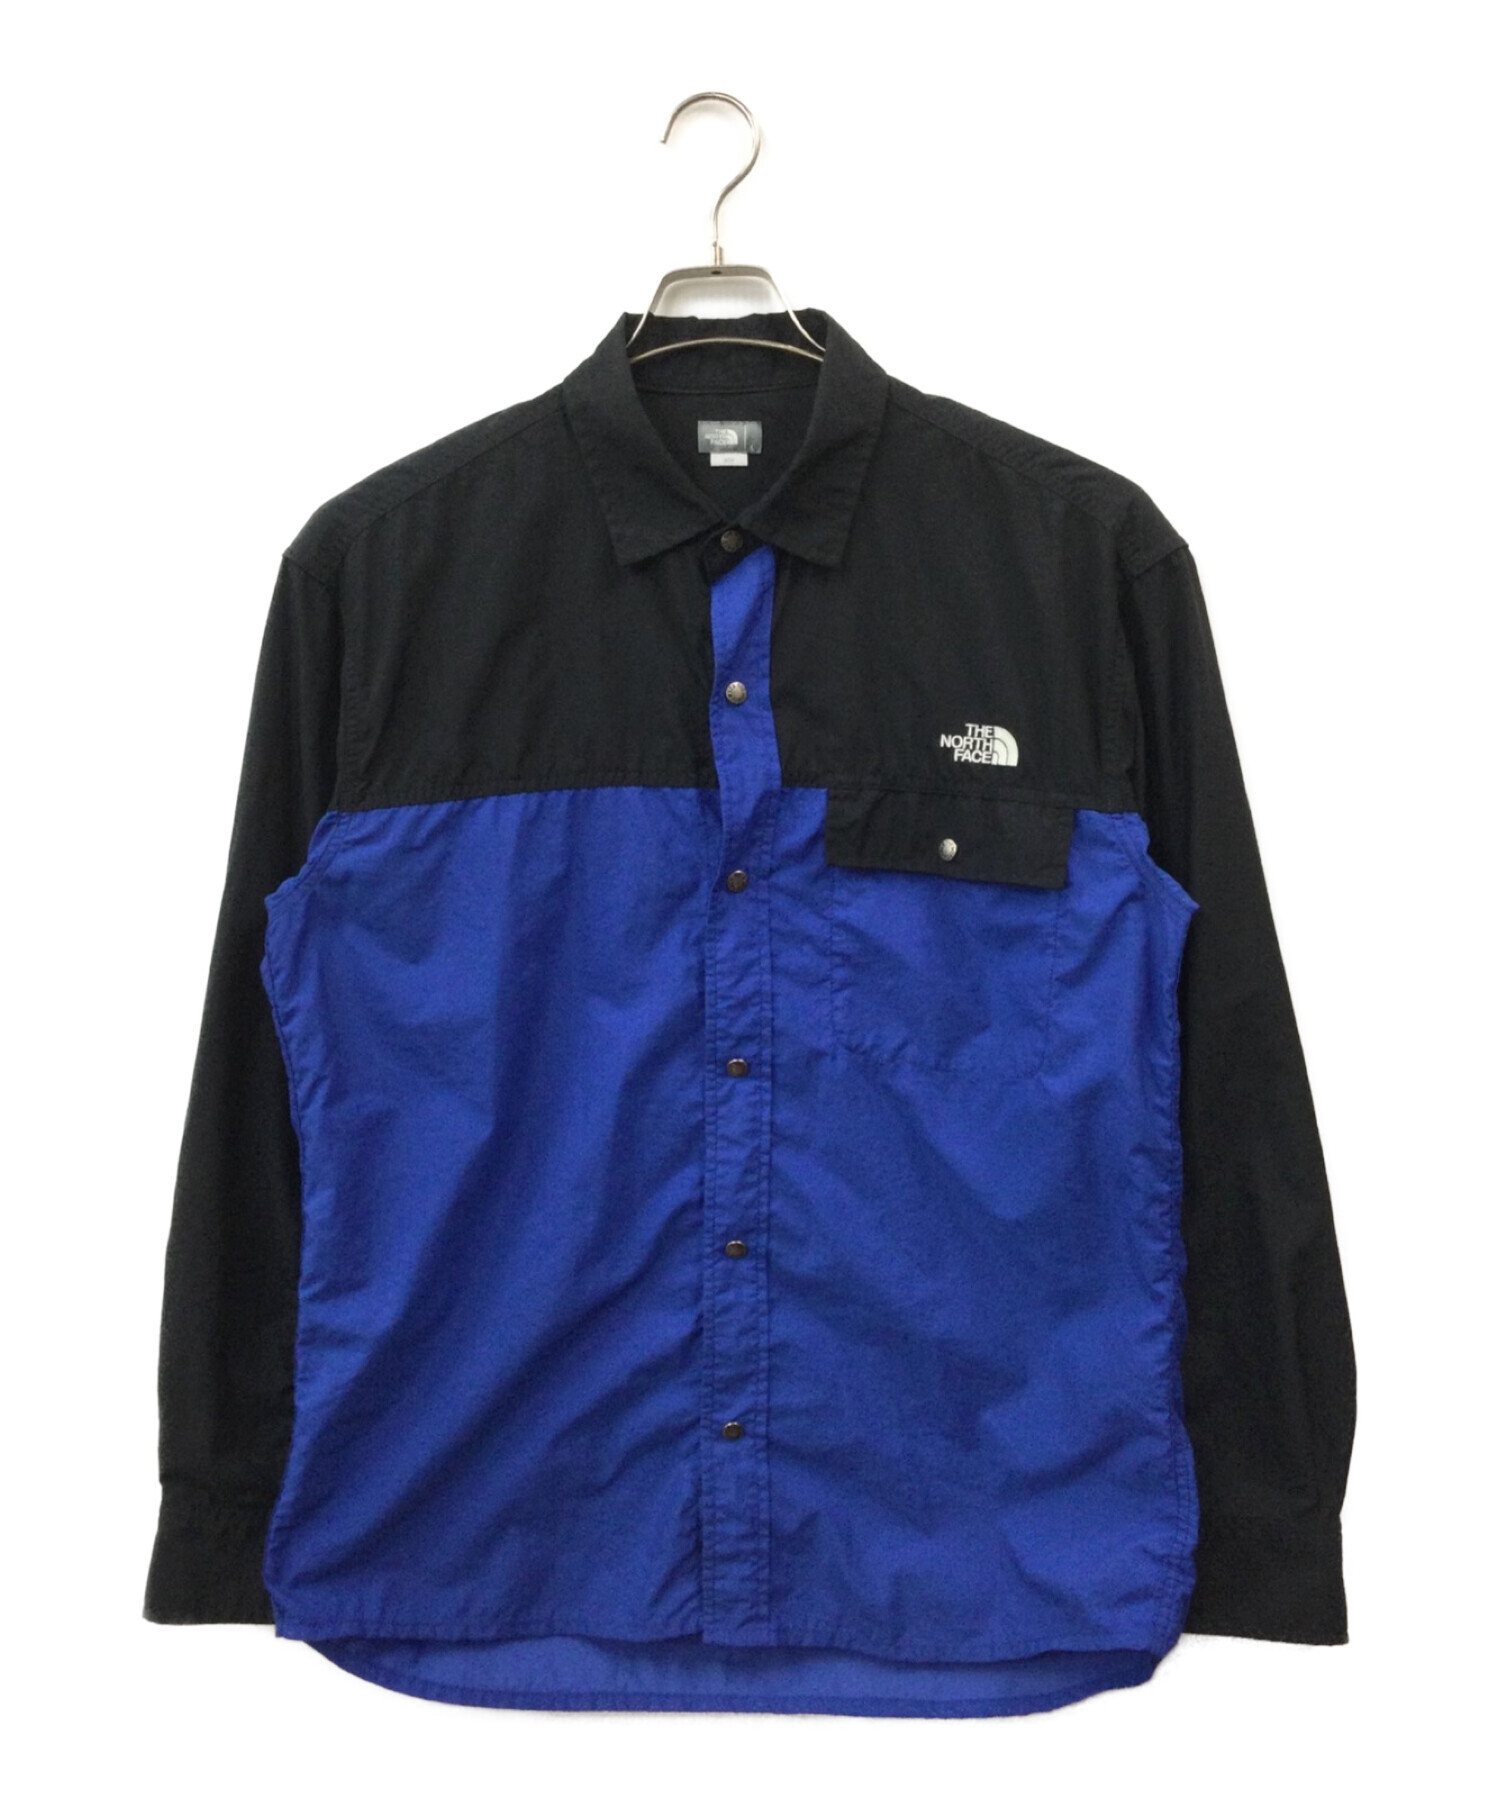 THE NORTH FACE (ザ ノース フェイス) ロングスリーブヌプシシャツ ブルー×ブラック サイズ:L